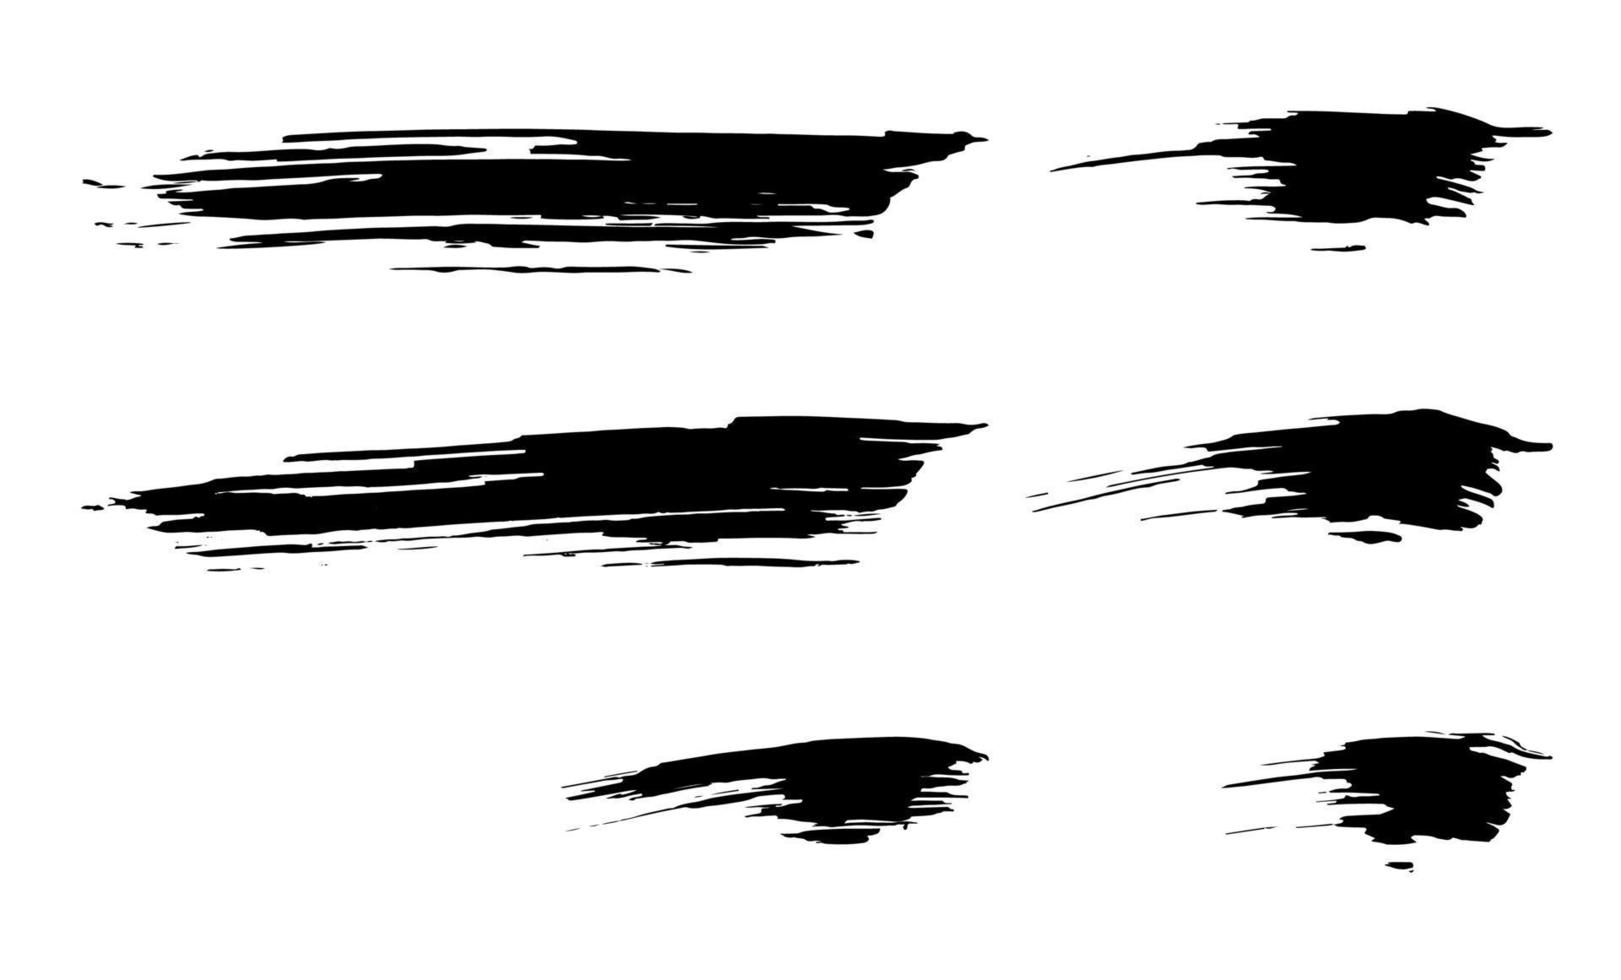 Satz von schmutziger trockener schwarzer Farbtintenpinselstrich-Grafikelementsammlung vektor